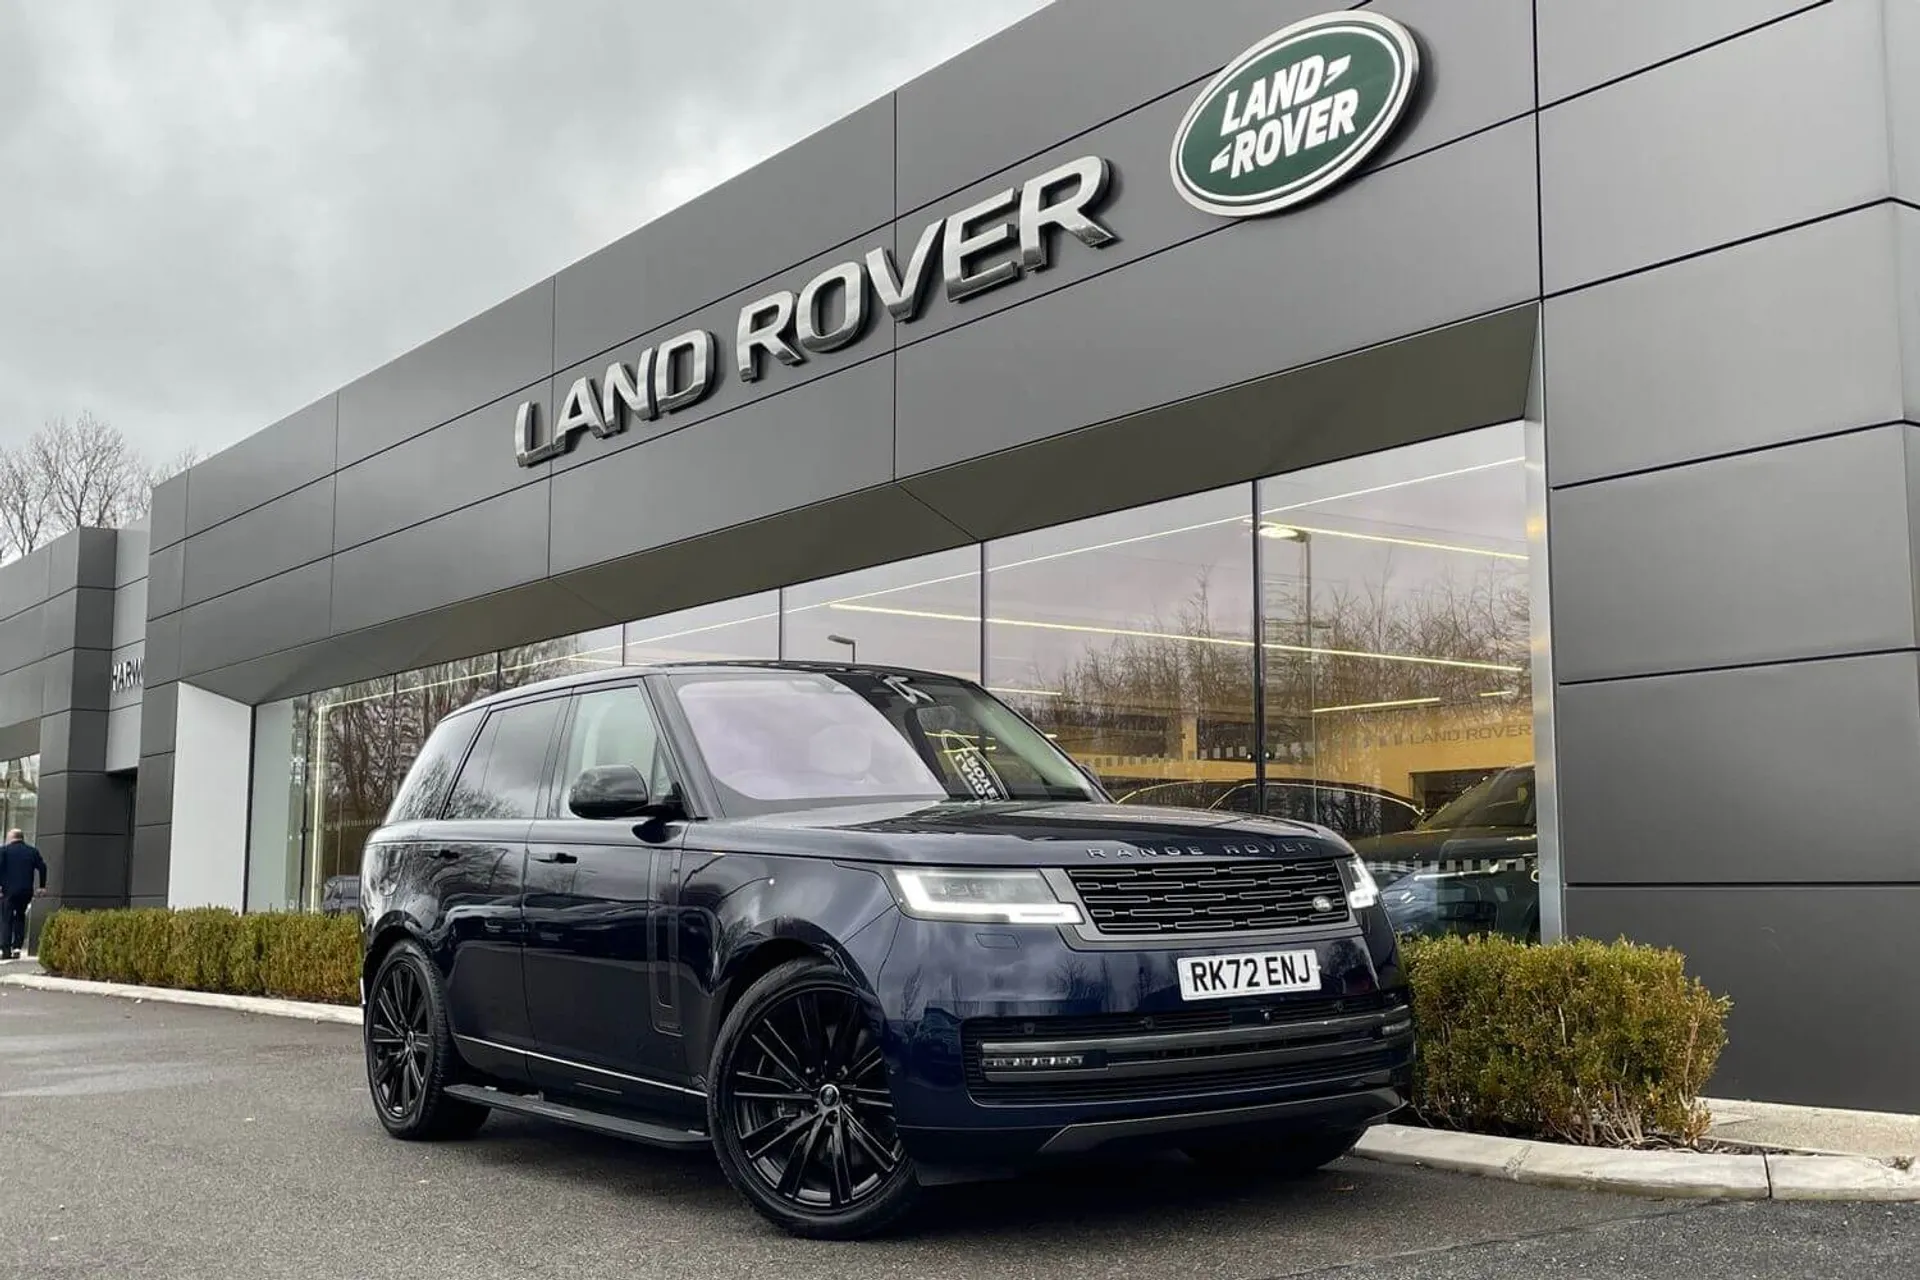 Land Rover Dealer UK  Find Land Rovers for Sale